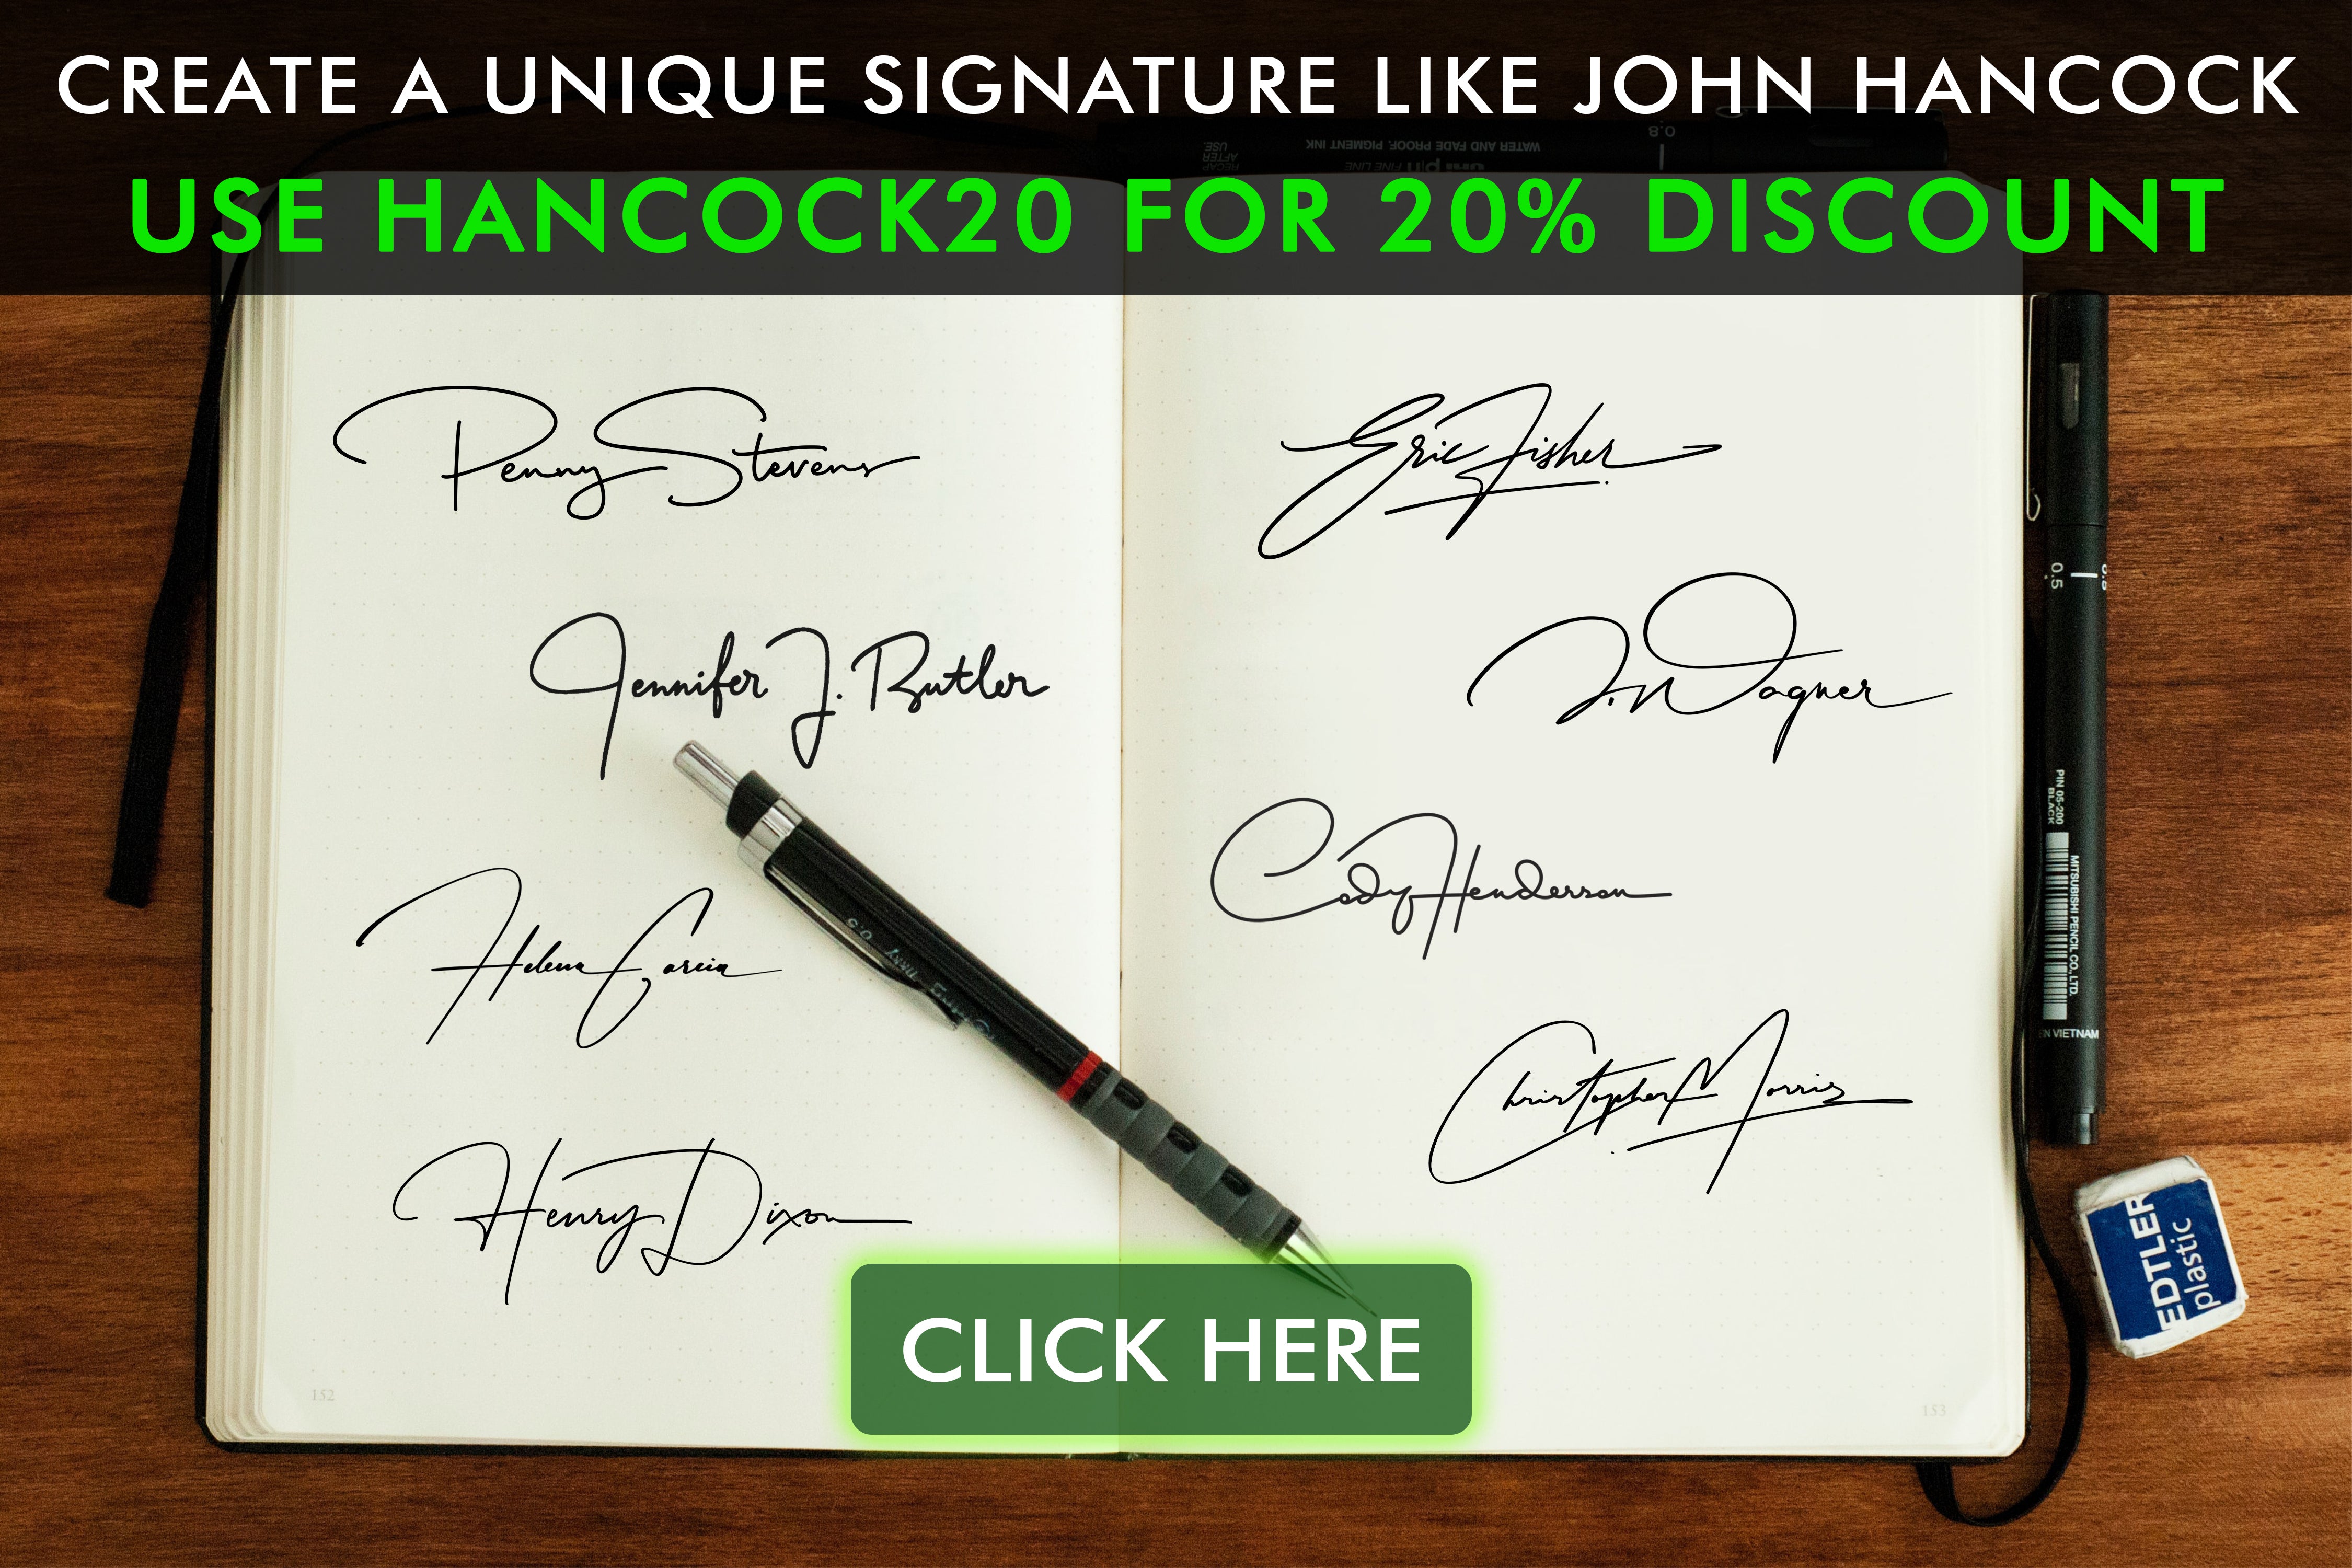 Ta reda på historien bakom John Hancocks signatur och dess inflytande på historien. Läs vår blogg och se vår kollektion som inspirerats av denna ikoniska signatur.